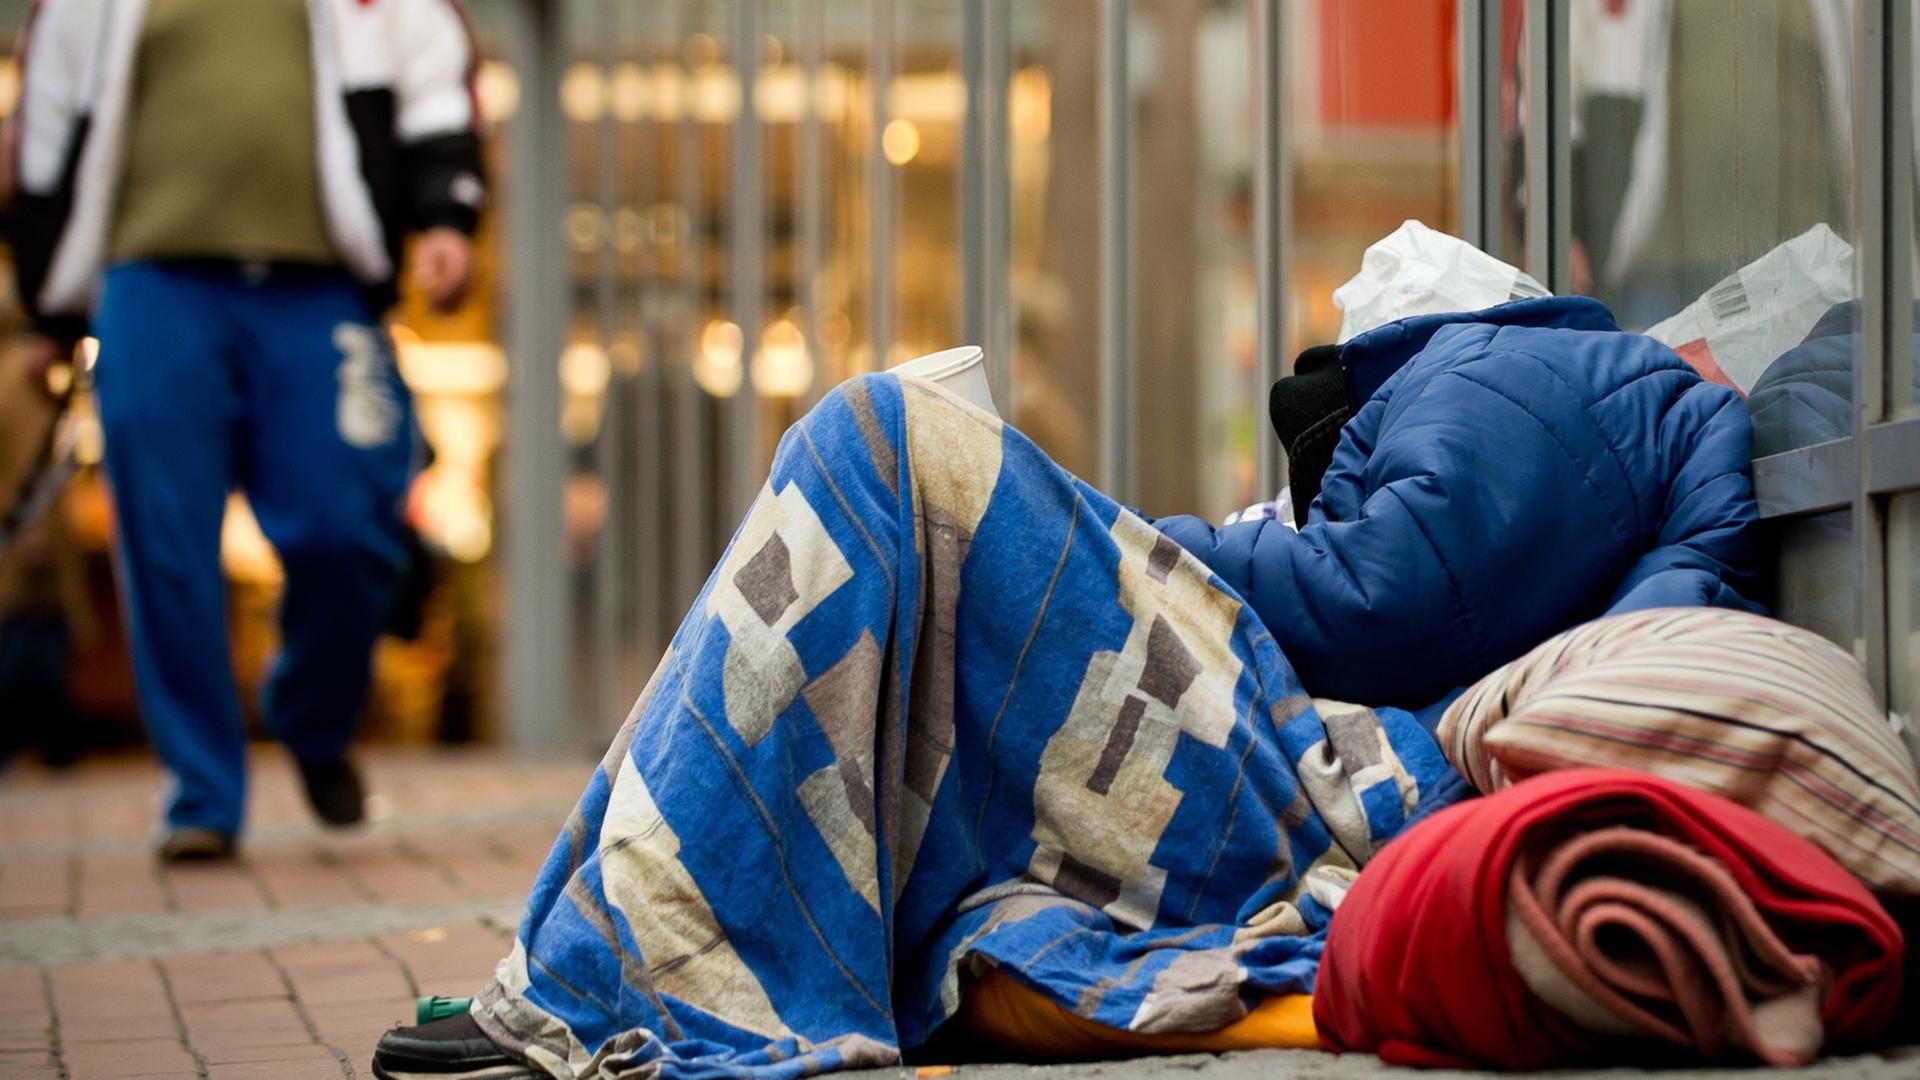 Ein Obdachloser schläft in einer Fußgängerzone in Dortmund, eingepackt in Decken und zwischen Plastiktüten auf dem Boden, während ein Mann vorbei läuft.